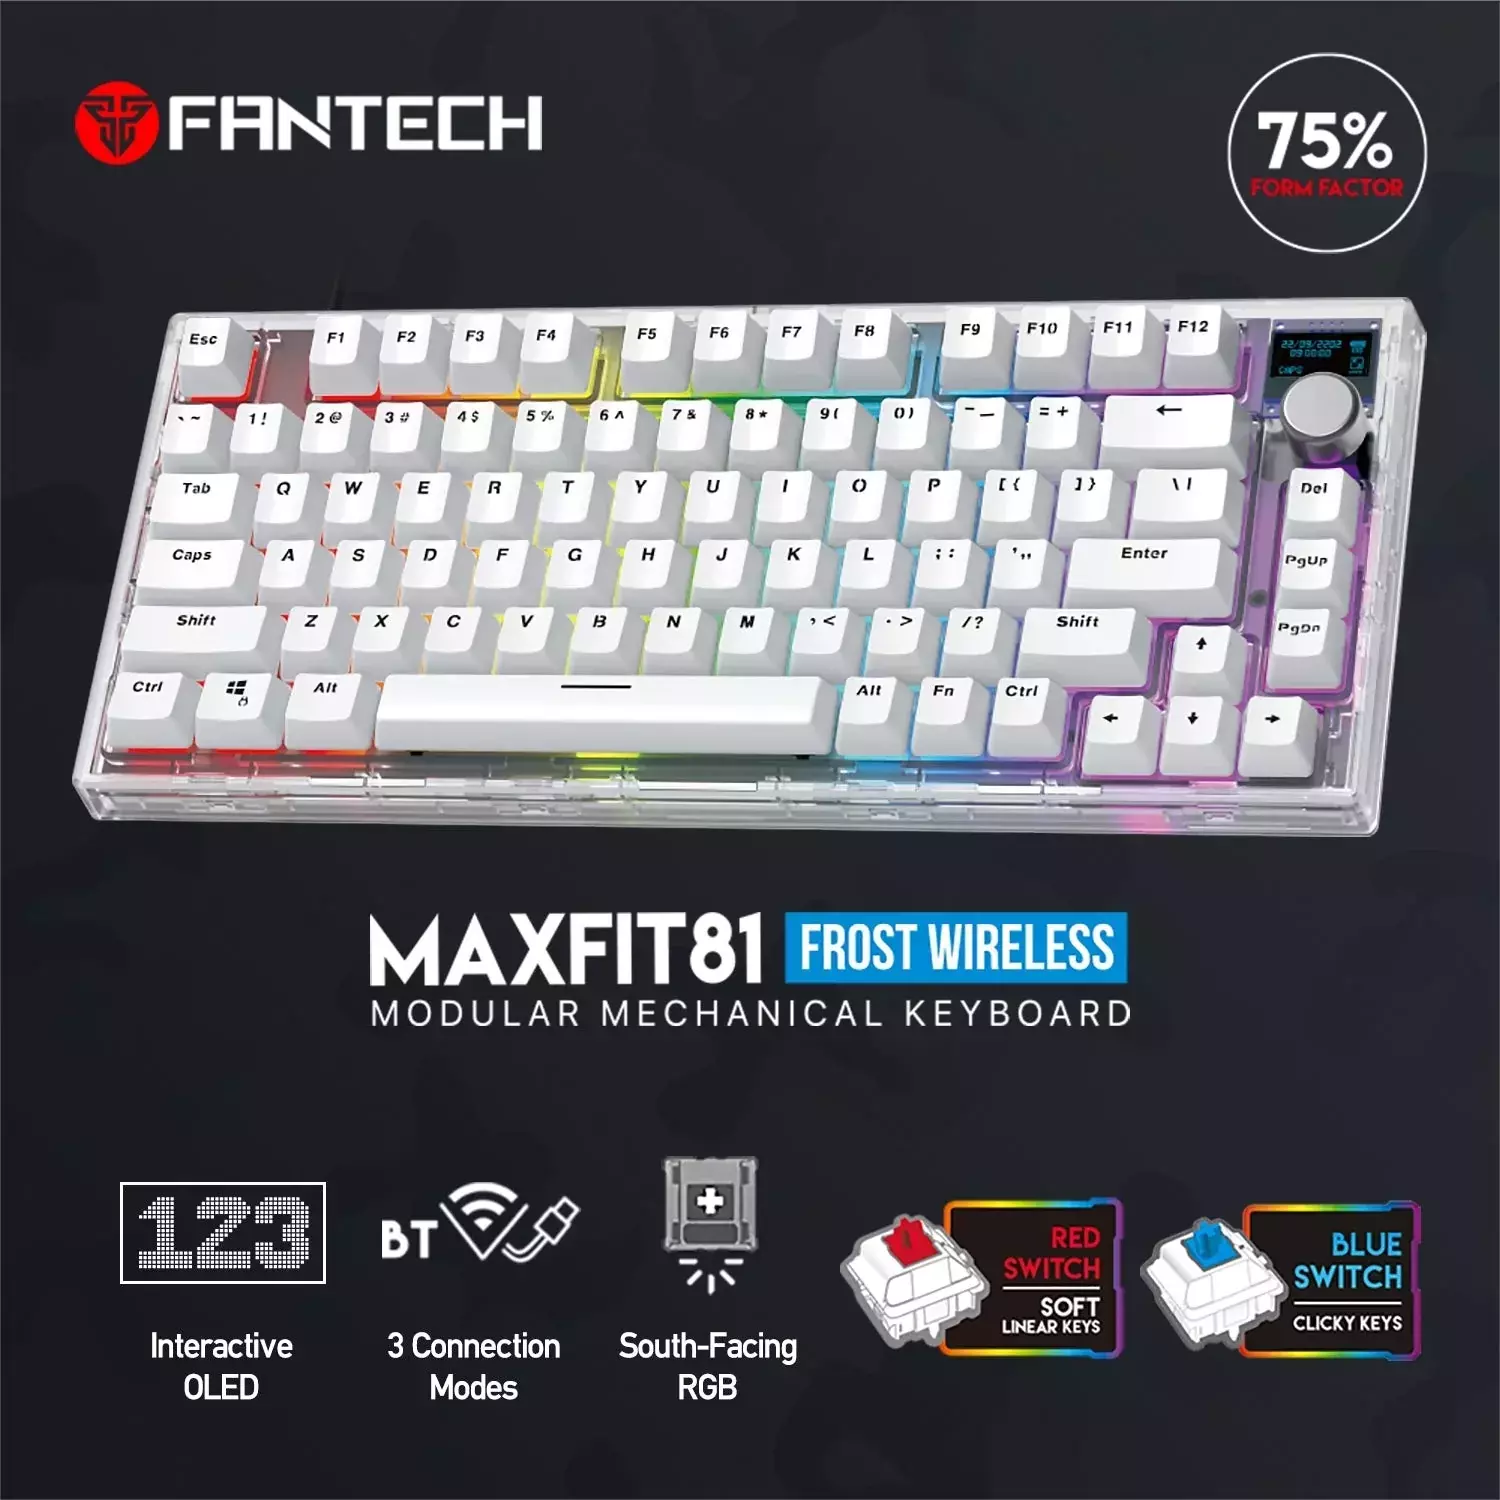 fantech-maxfit81-mk910-abs-frost-wireless-modular-mechanical-gaming-keyboard-oled-mech-564